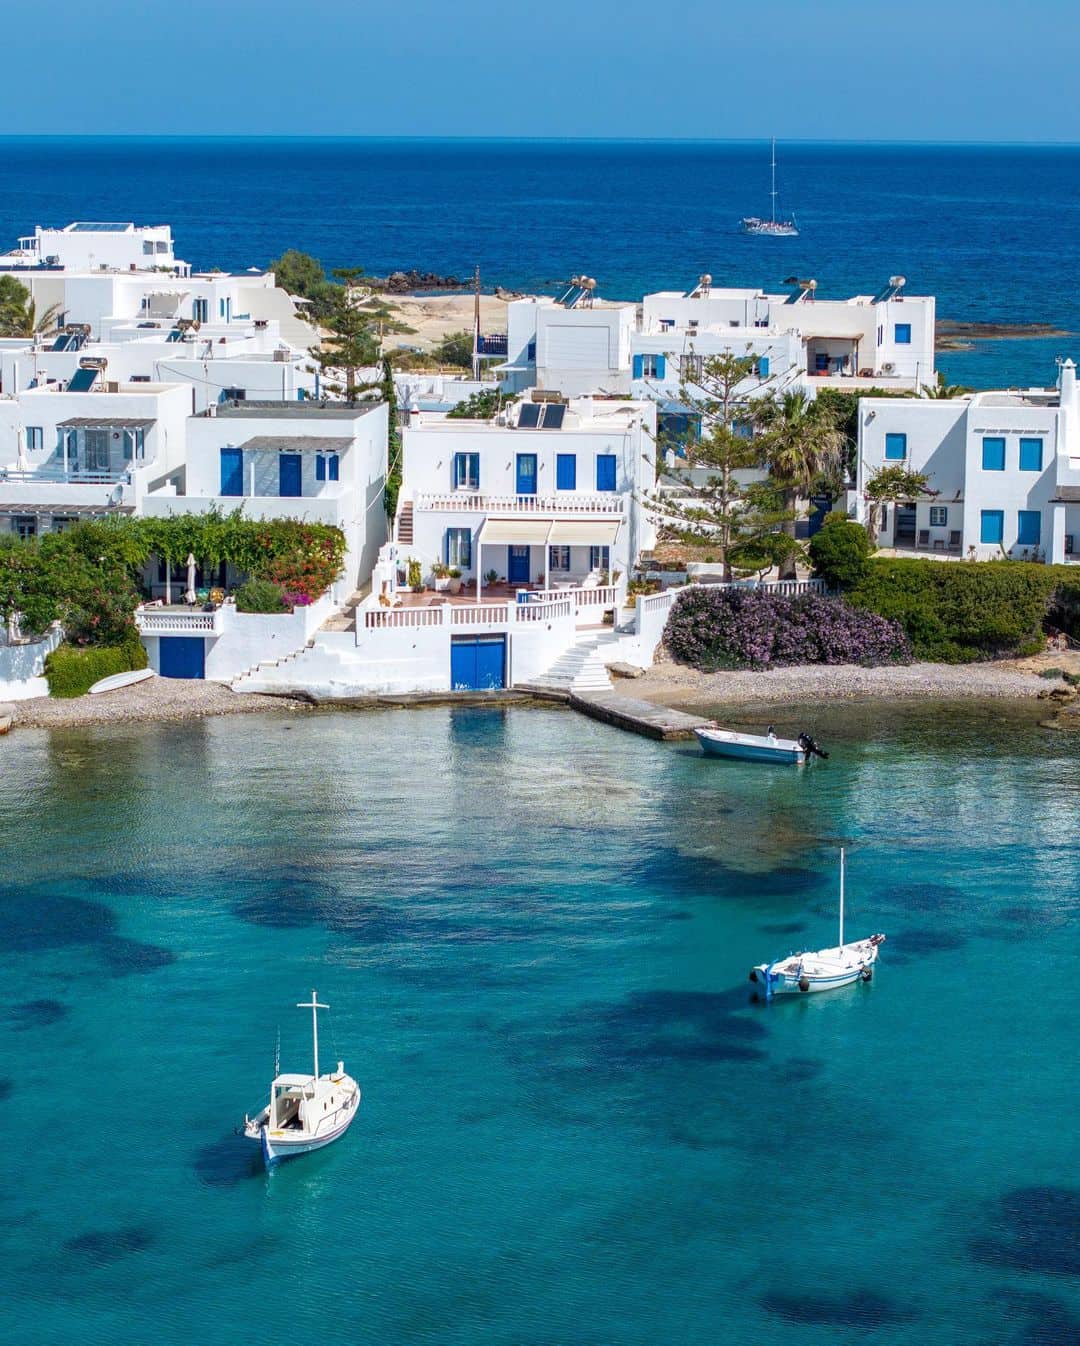 Pueblo con casas blancas y ventanas azules en la isla del Dodecaneso, aguas cristalinas y veleros, escenario de luna de miel